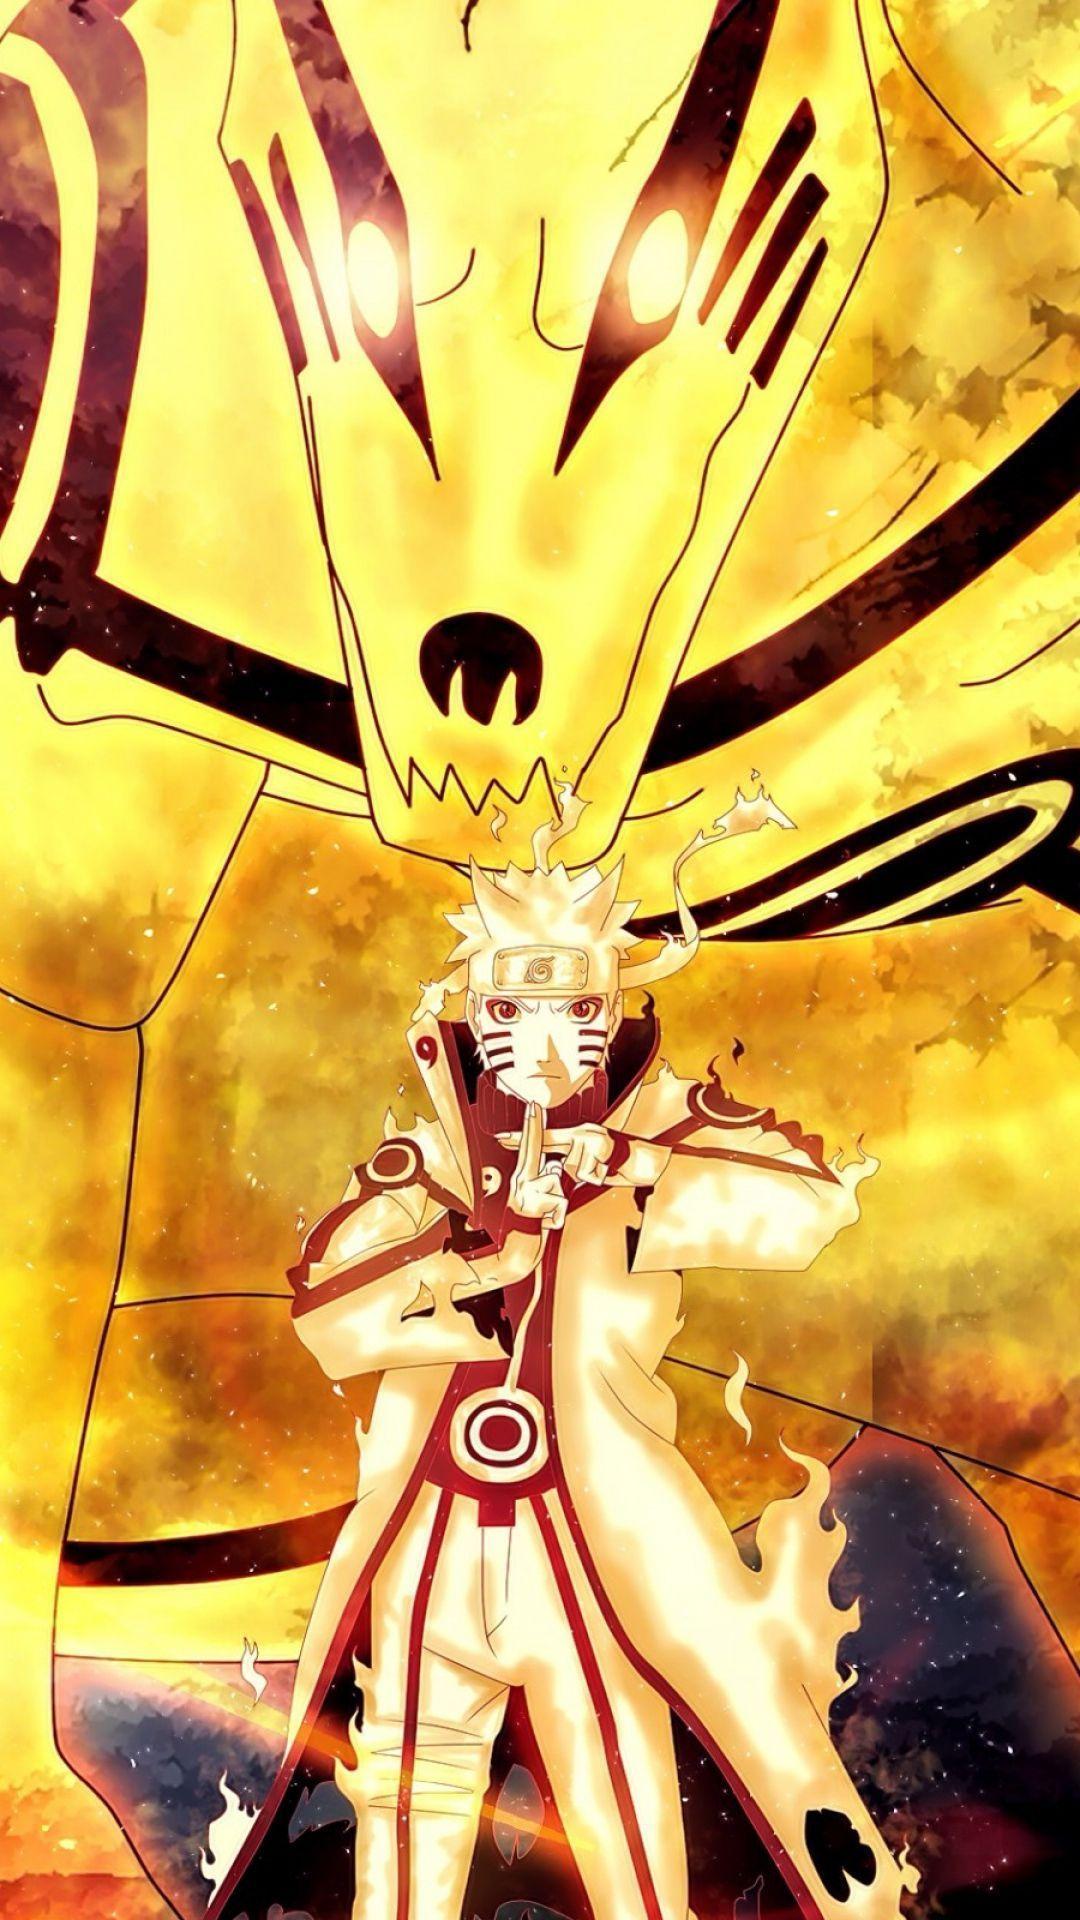 Hình ảnh Naruto màu vàng: Thưởng thức vẻ đẹp hoàn hảo của nhân vật Naruto trong bộ ảnh đầy màu sắc và rực rỡ này. Màu vàng tươi sáng càng làm nổi bật thêm sức mạnh và bản lĩnh của anh chàng ninja này. Hãy cùng chiêm ngưỡng và khám phá điều bí mật đằng sau bức ảnh này!